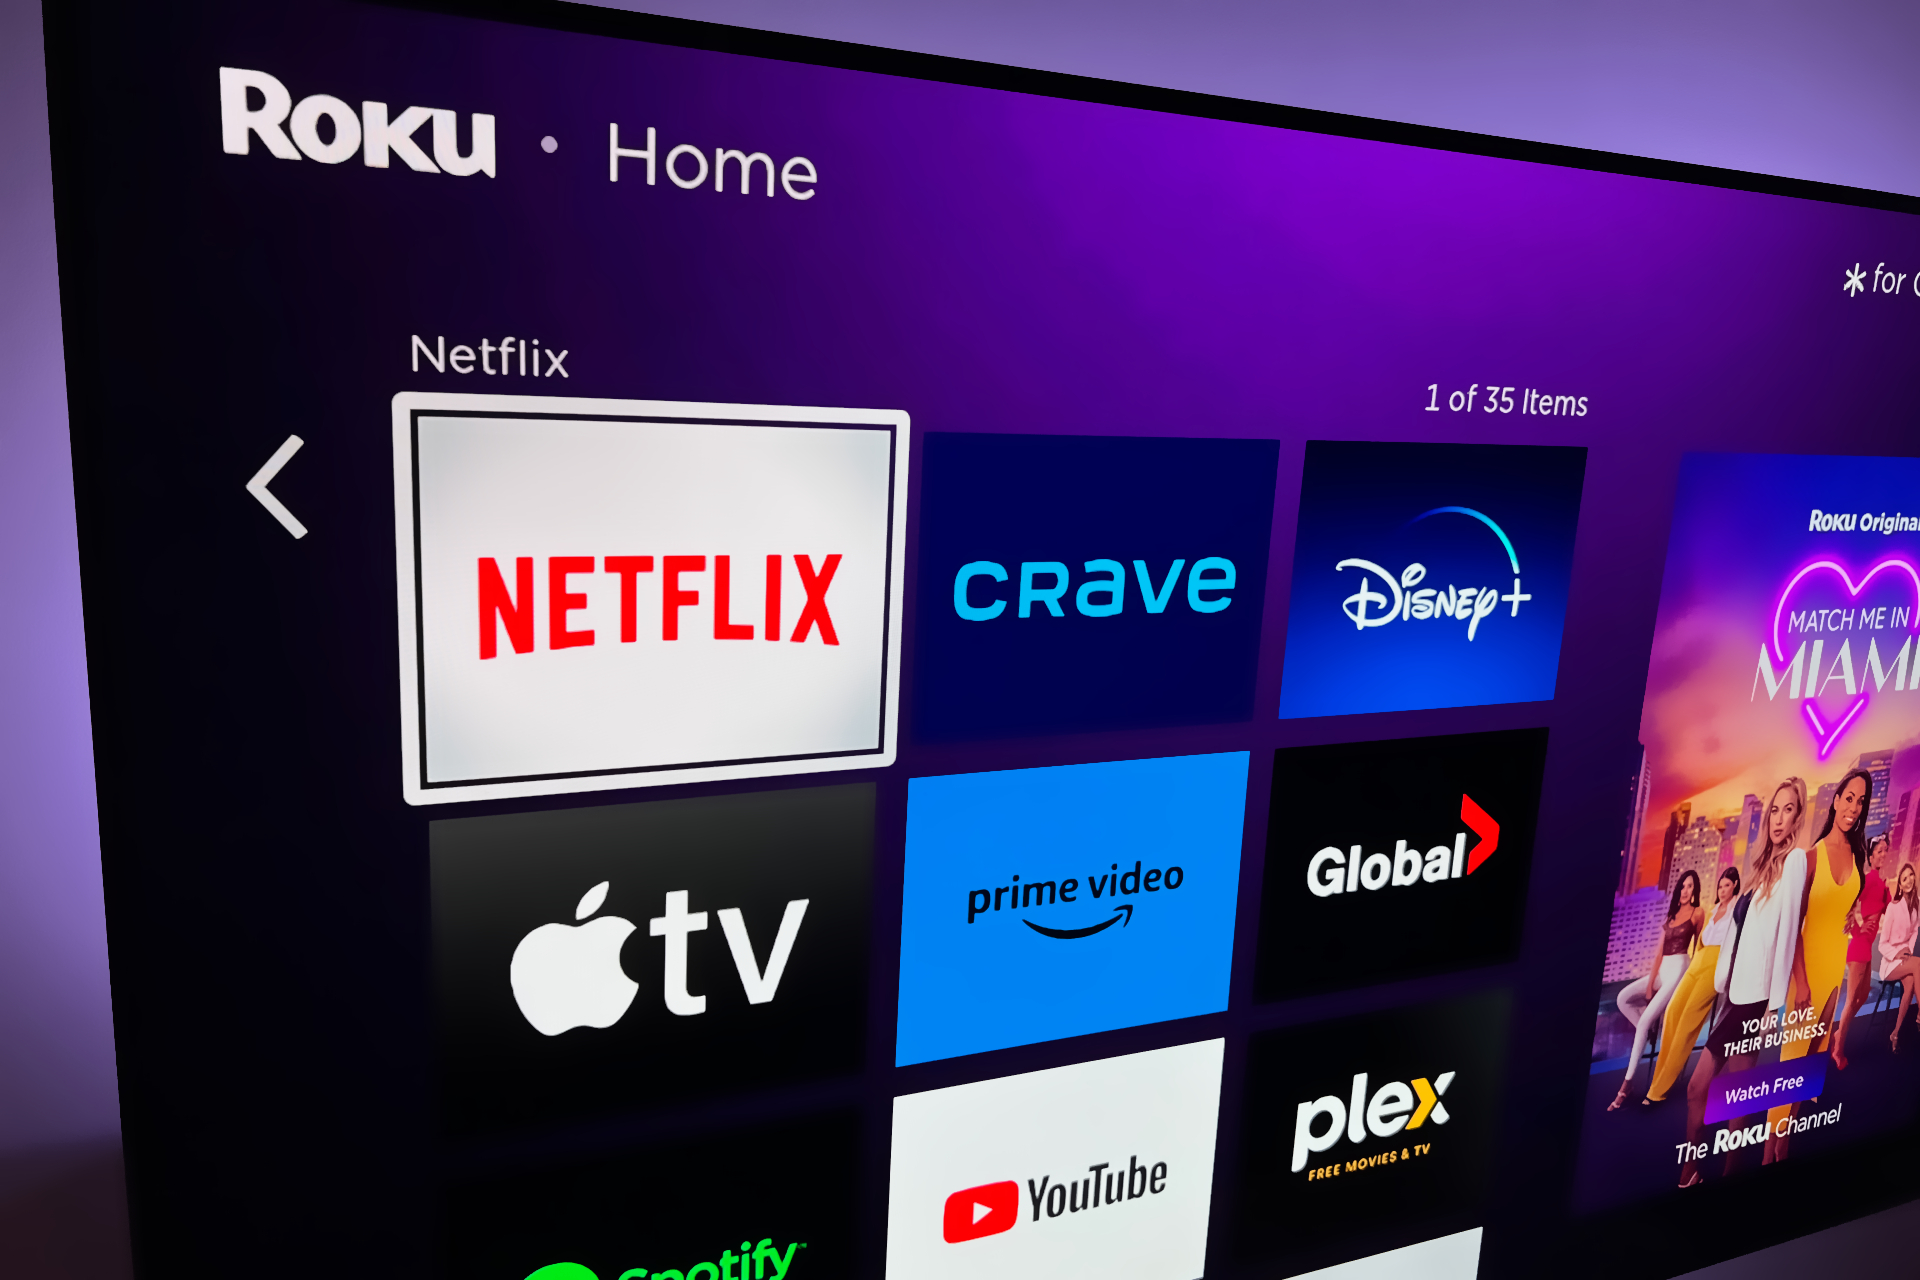 Netflix em uma tela de TV exibida na tela inicial do Roku.